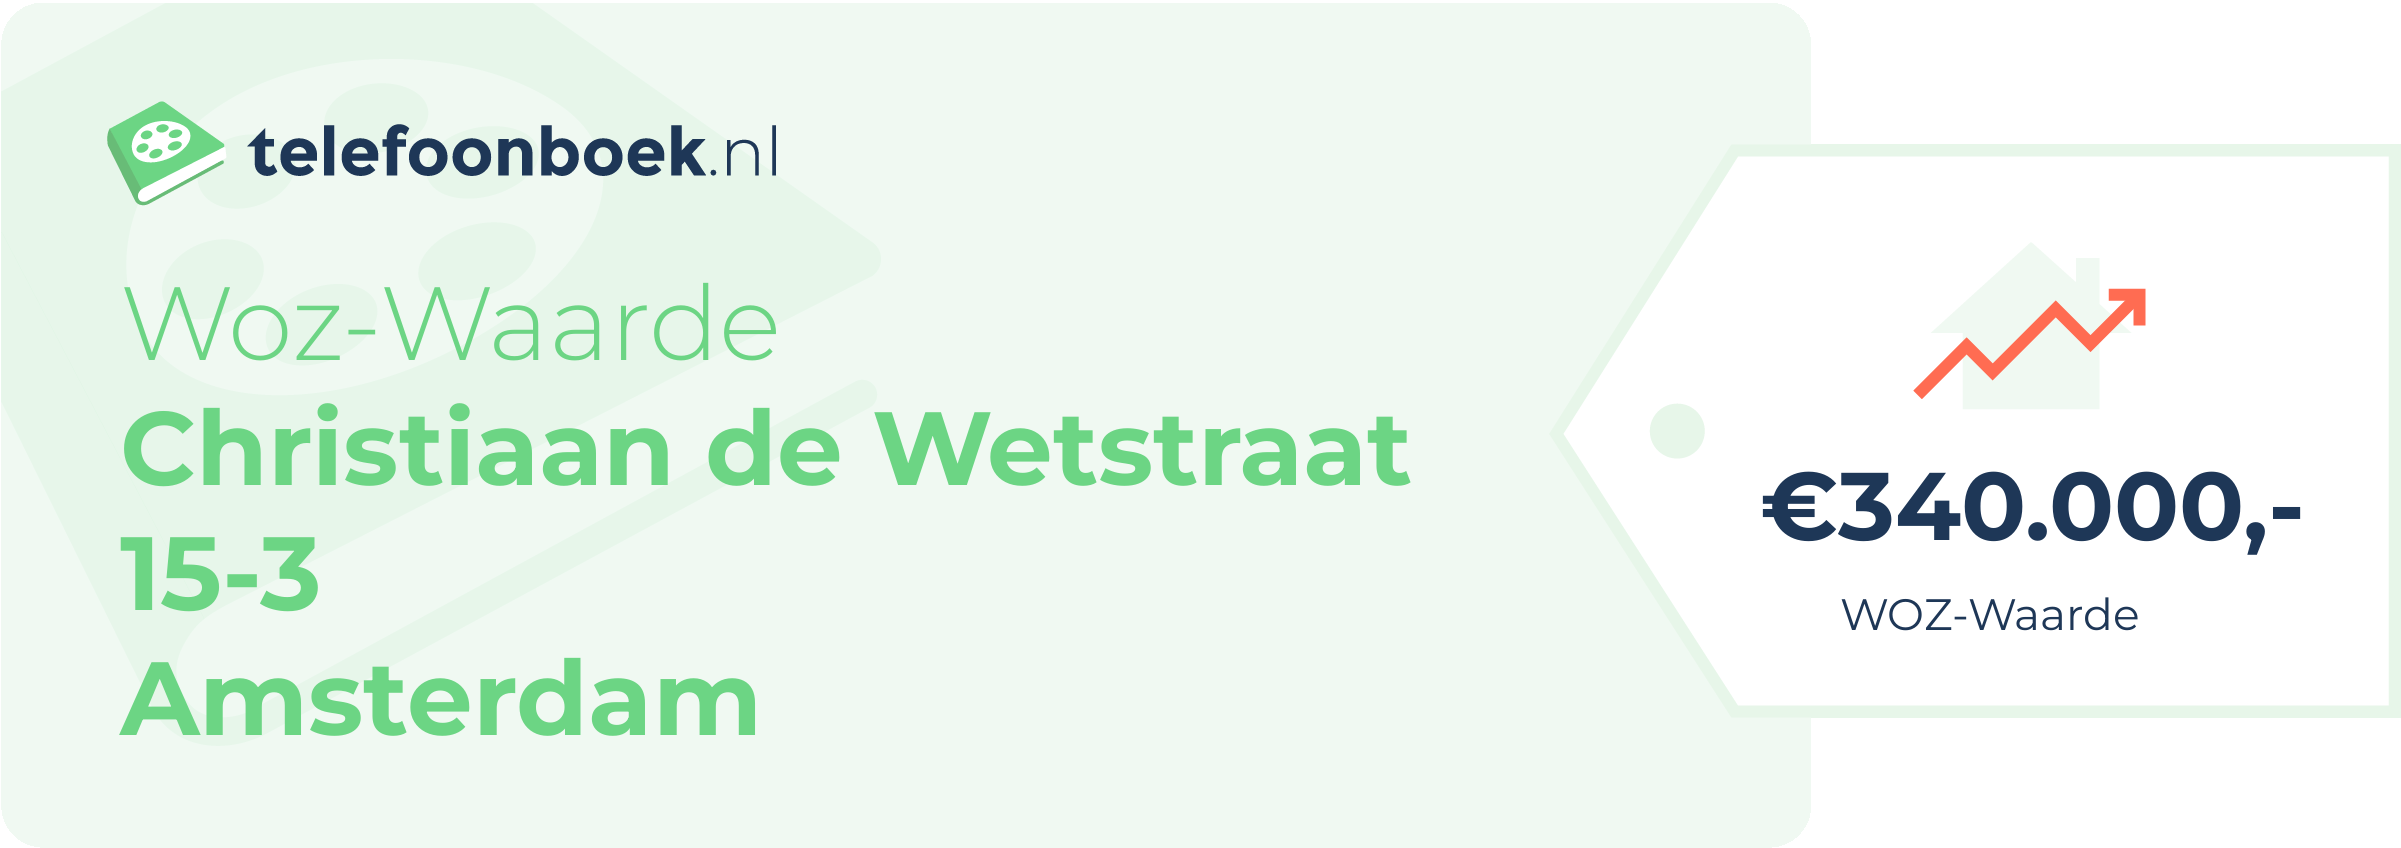 WOZ-waarde Christiaan De Wetstraat 15-3 Amsterdam